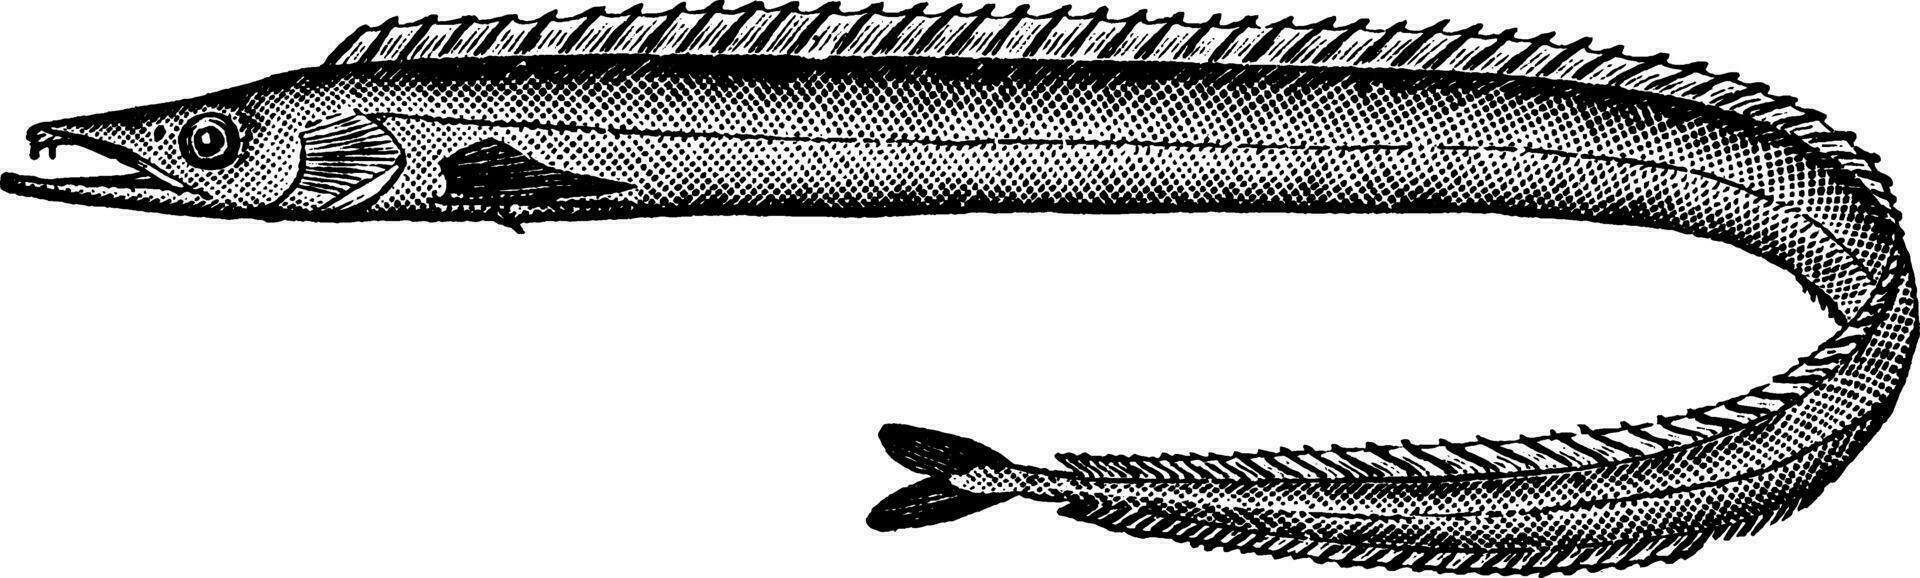 slida fisk, årgång illustration. vektor